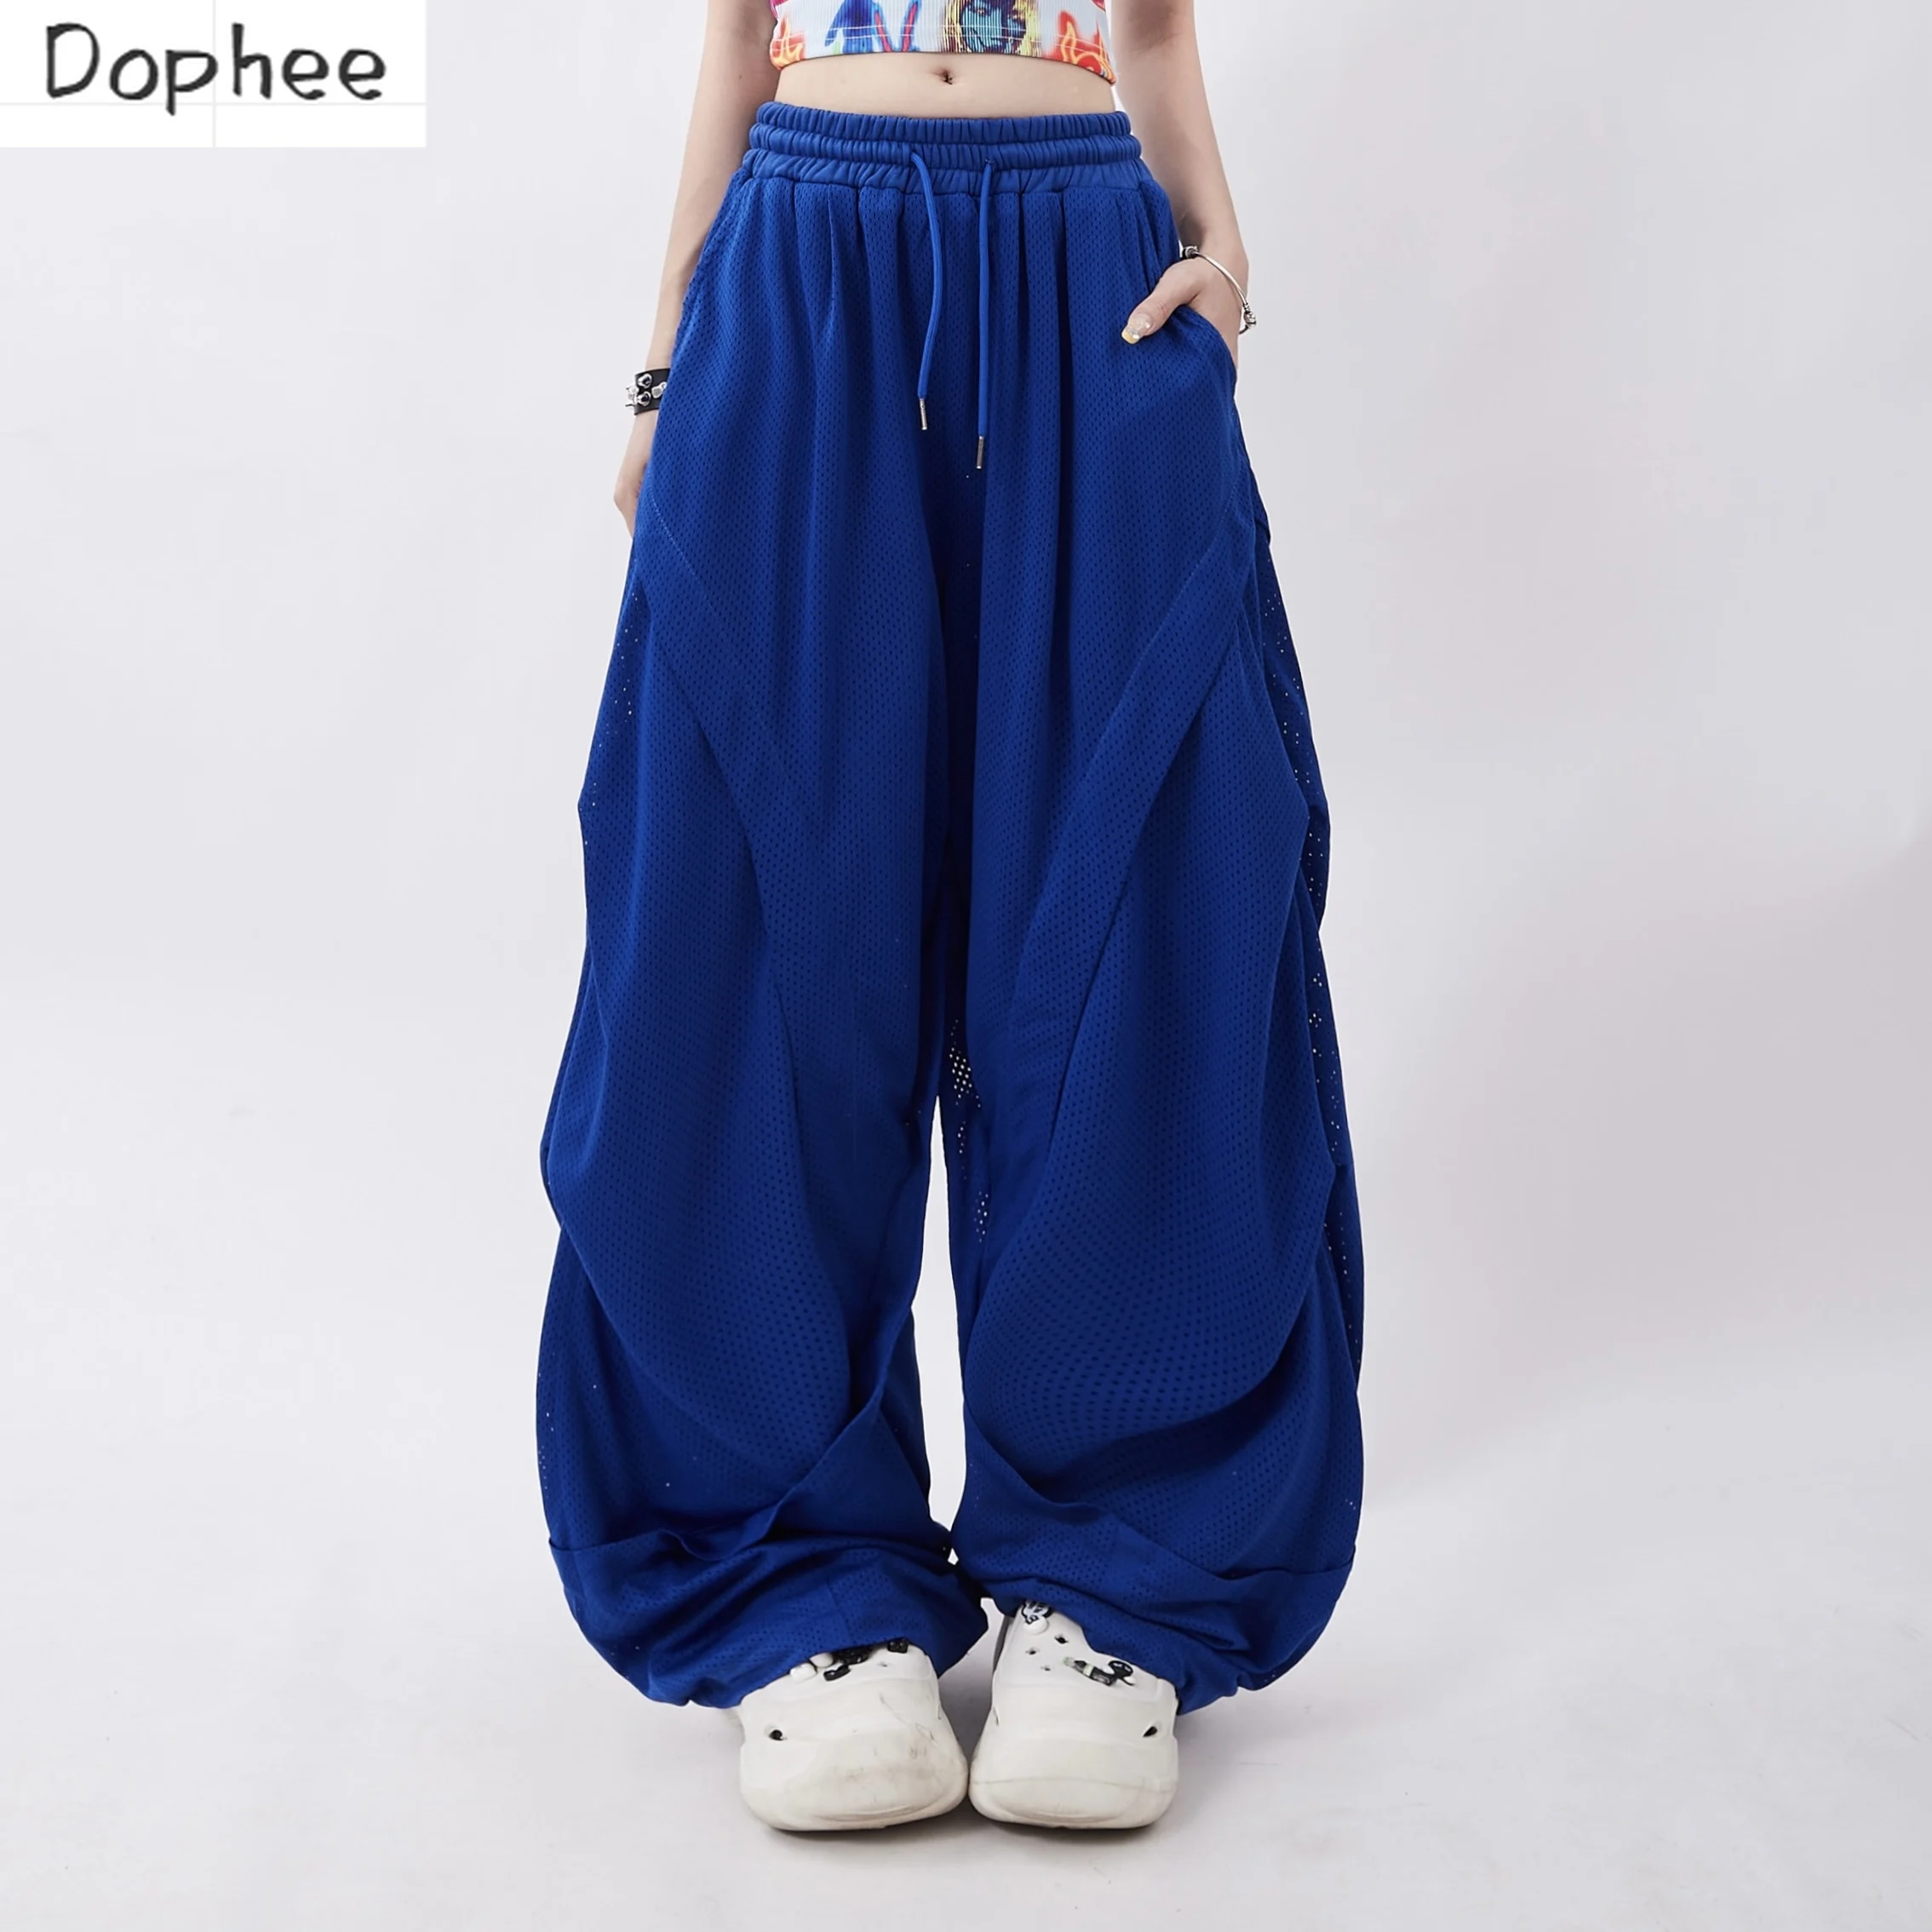 dophee-klein-pantalones-informales-de-estilo-americano-para-mujer-pantalones-de-pierna-ancha-que-combinan-con-todo-pantalones-de-baile-de-cintura-elastica-con-cordon-color-azul-verano